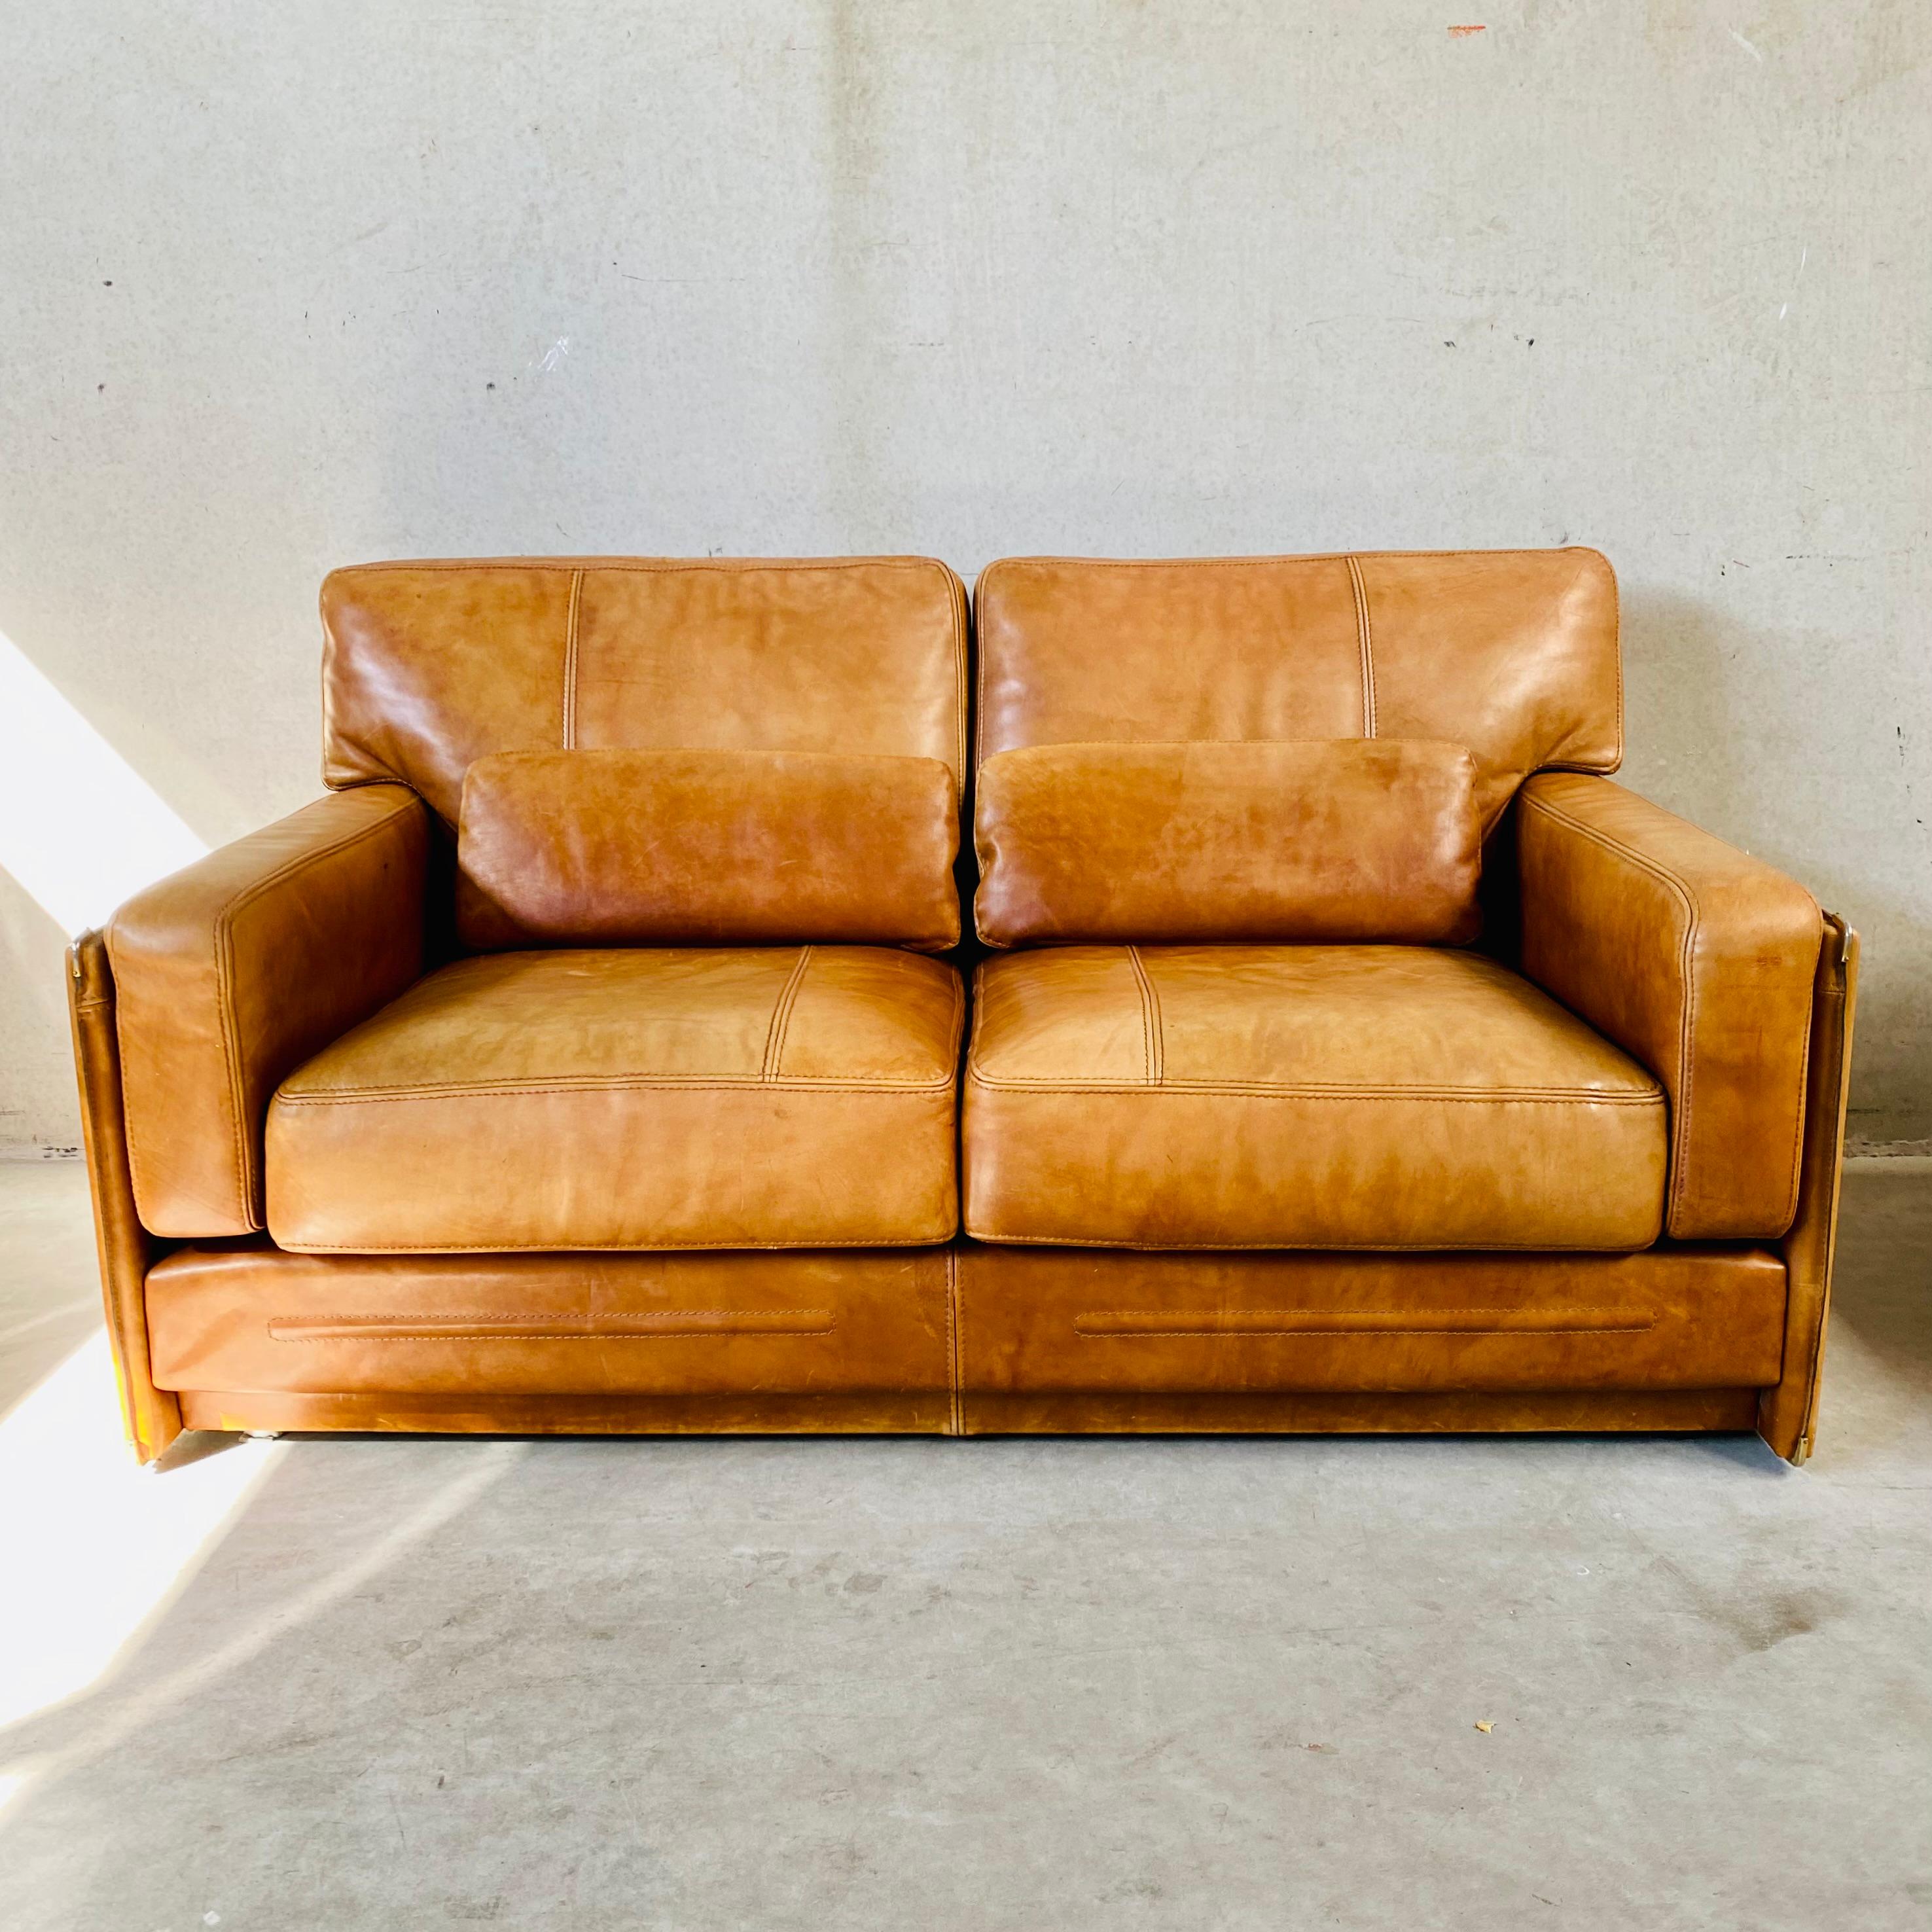 baxter milano sofa price